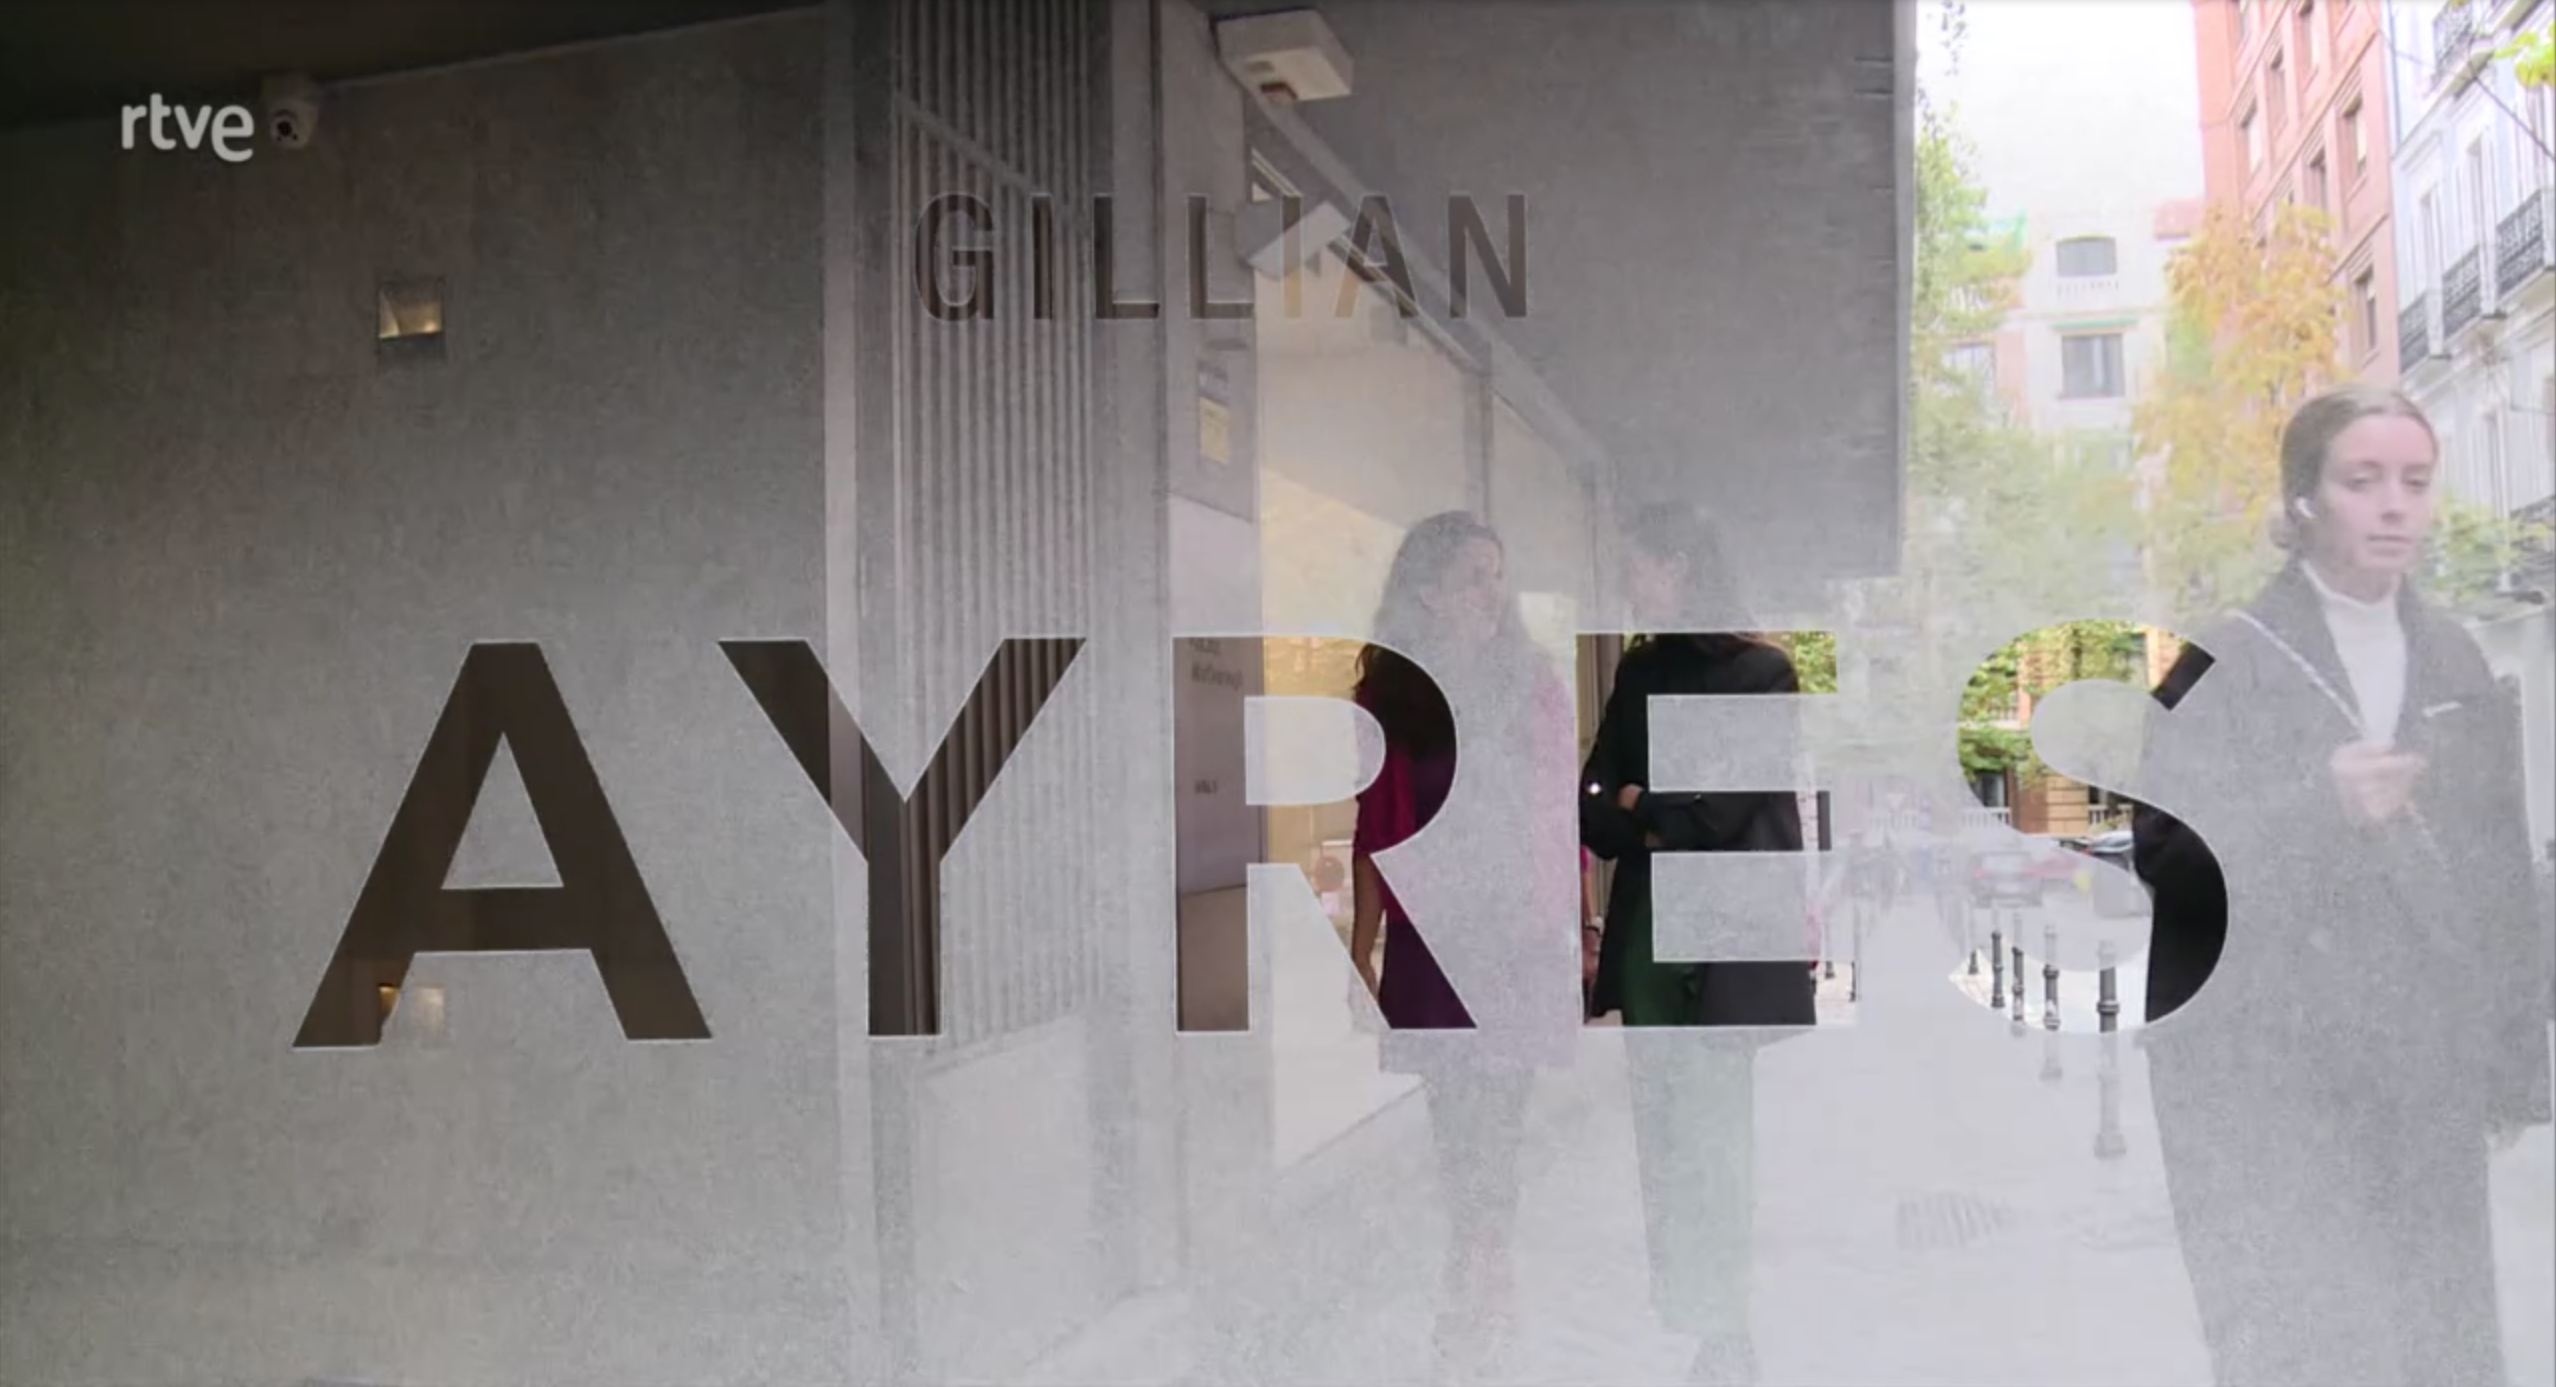 El programa Culturas 2 de RTVE dedica un amplio reportaje a la exposición de Gillian Ayres en Galería Marlborough